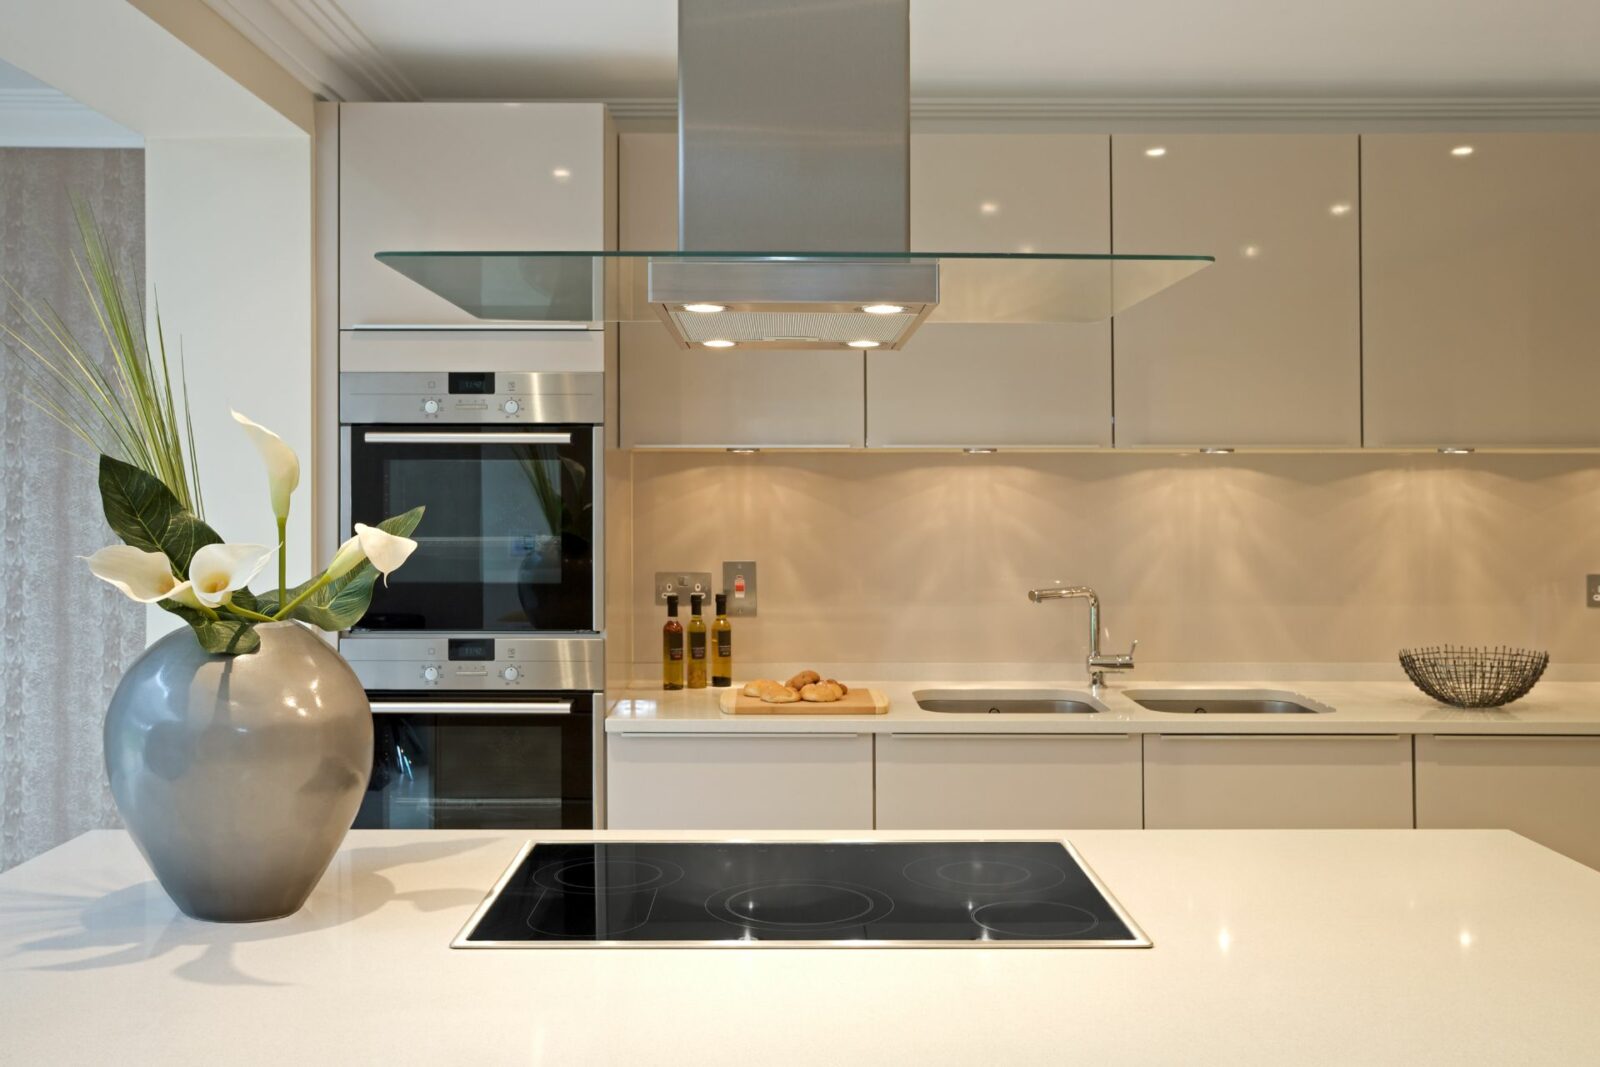 beige kitchen cabinets